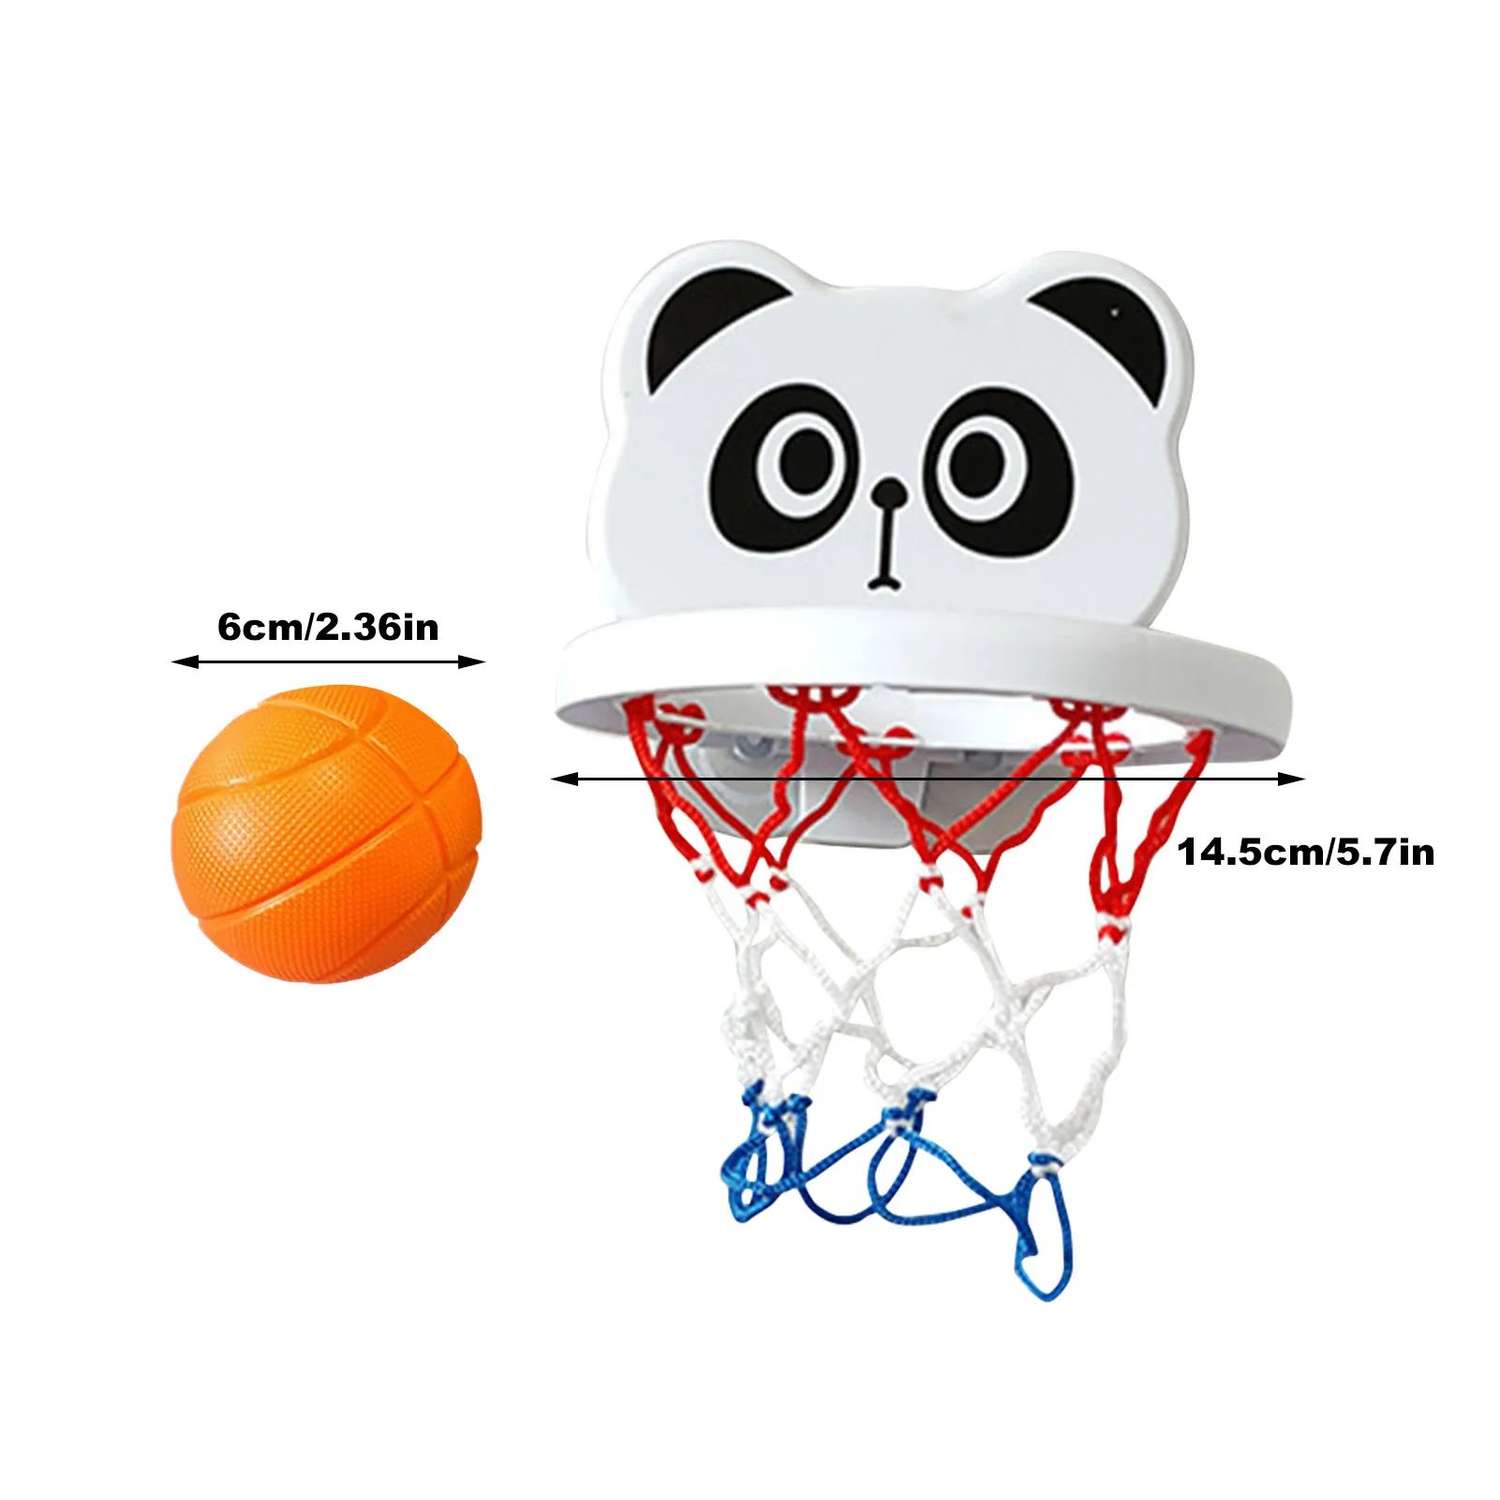 Игрушка для купания в ванной MagicStyle панда баскетбольное кольцо на присосках баскетбол 3 мяча - фото 2